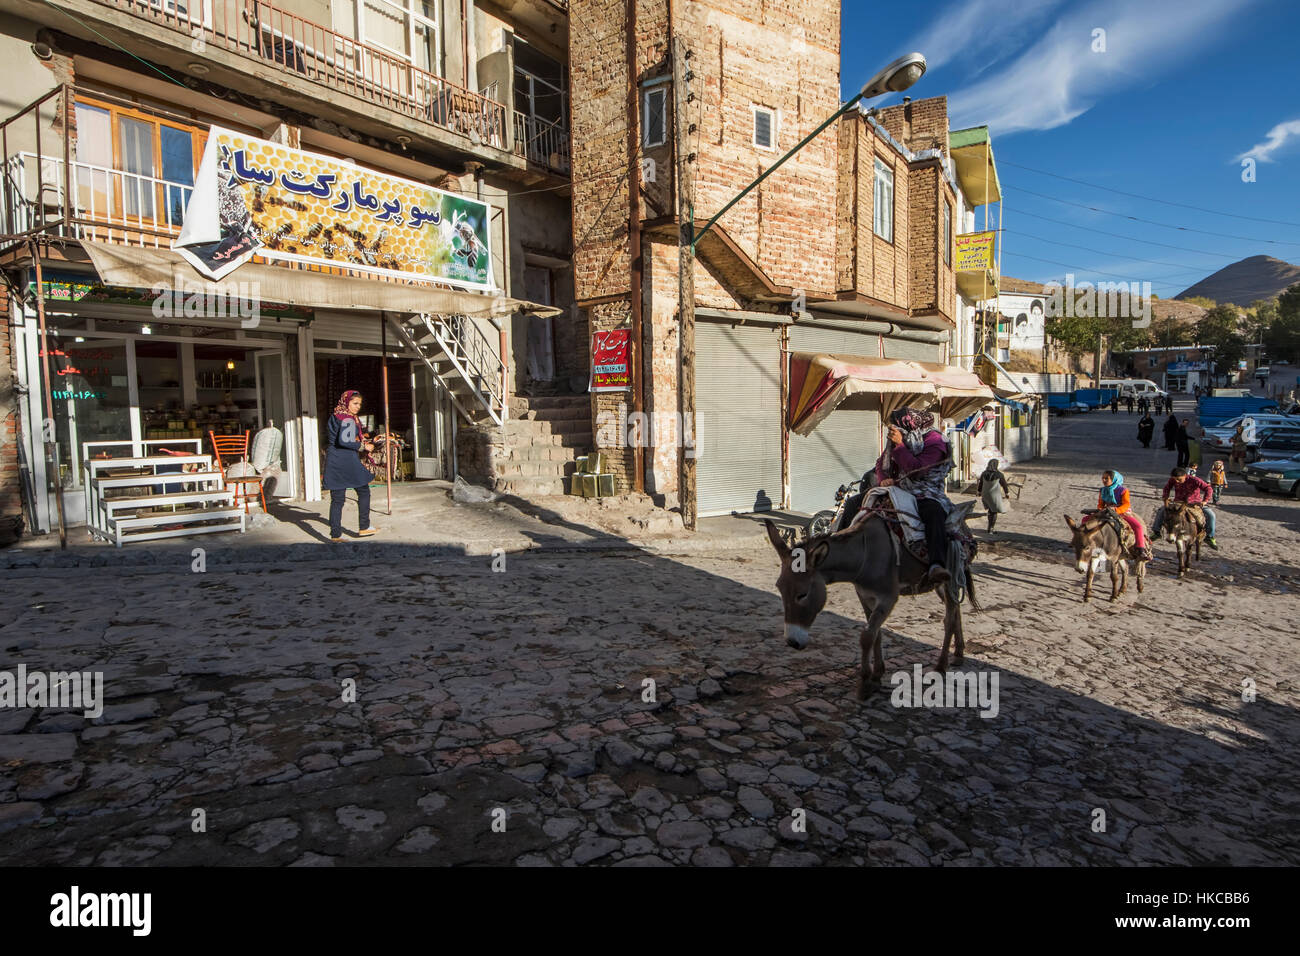 People riding on donkeys; Kandovan, East Azarbaijan, Iran Stock Photo